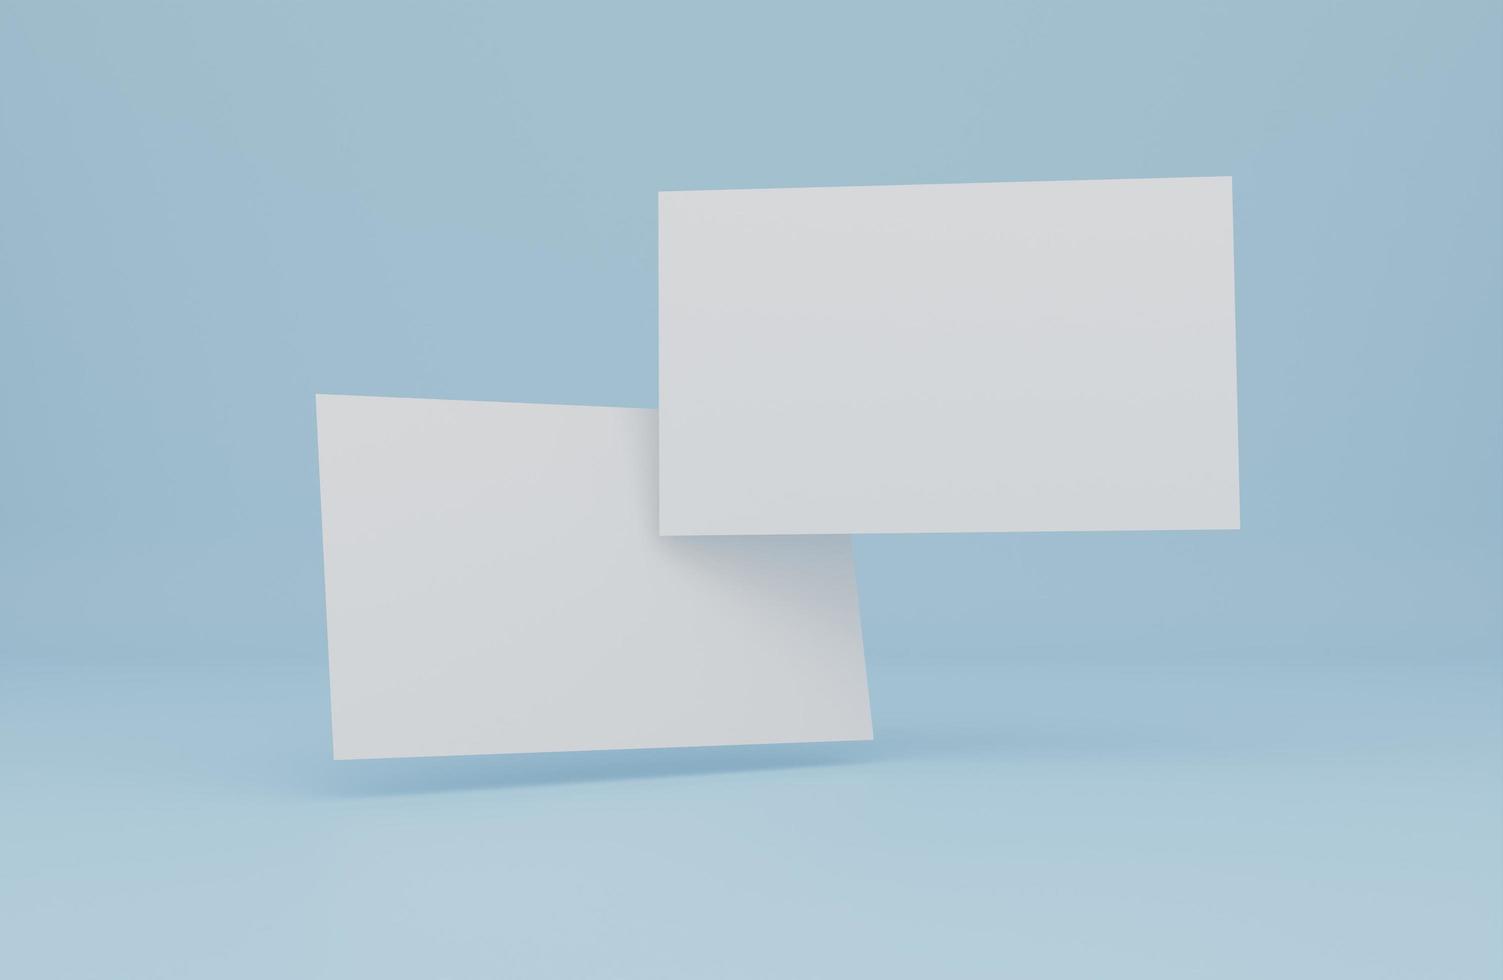 modelo de maquete de cartão de visita moderno com traçado de recorte. design de maquete para apresentação de marca, identidade corporativa, publicidade, pessoal, artigos de papelaria, apresentações de designers gráficos. renderização em 3D foto